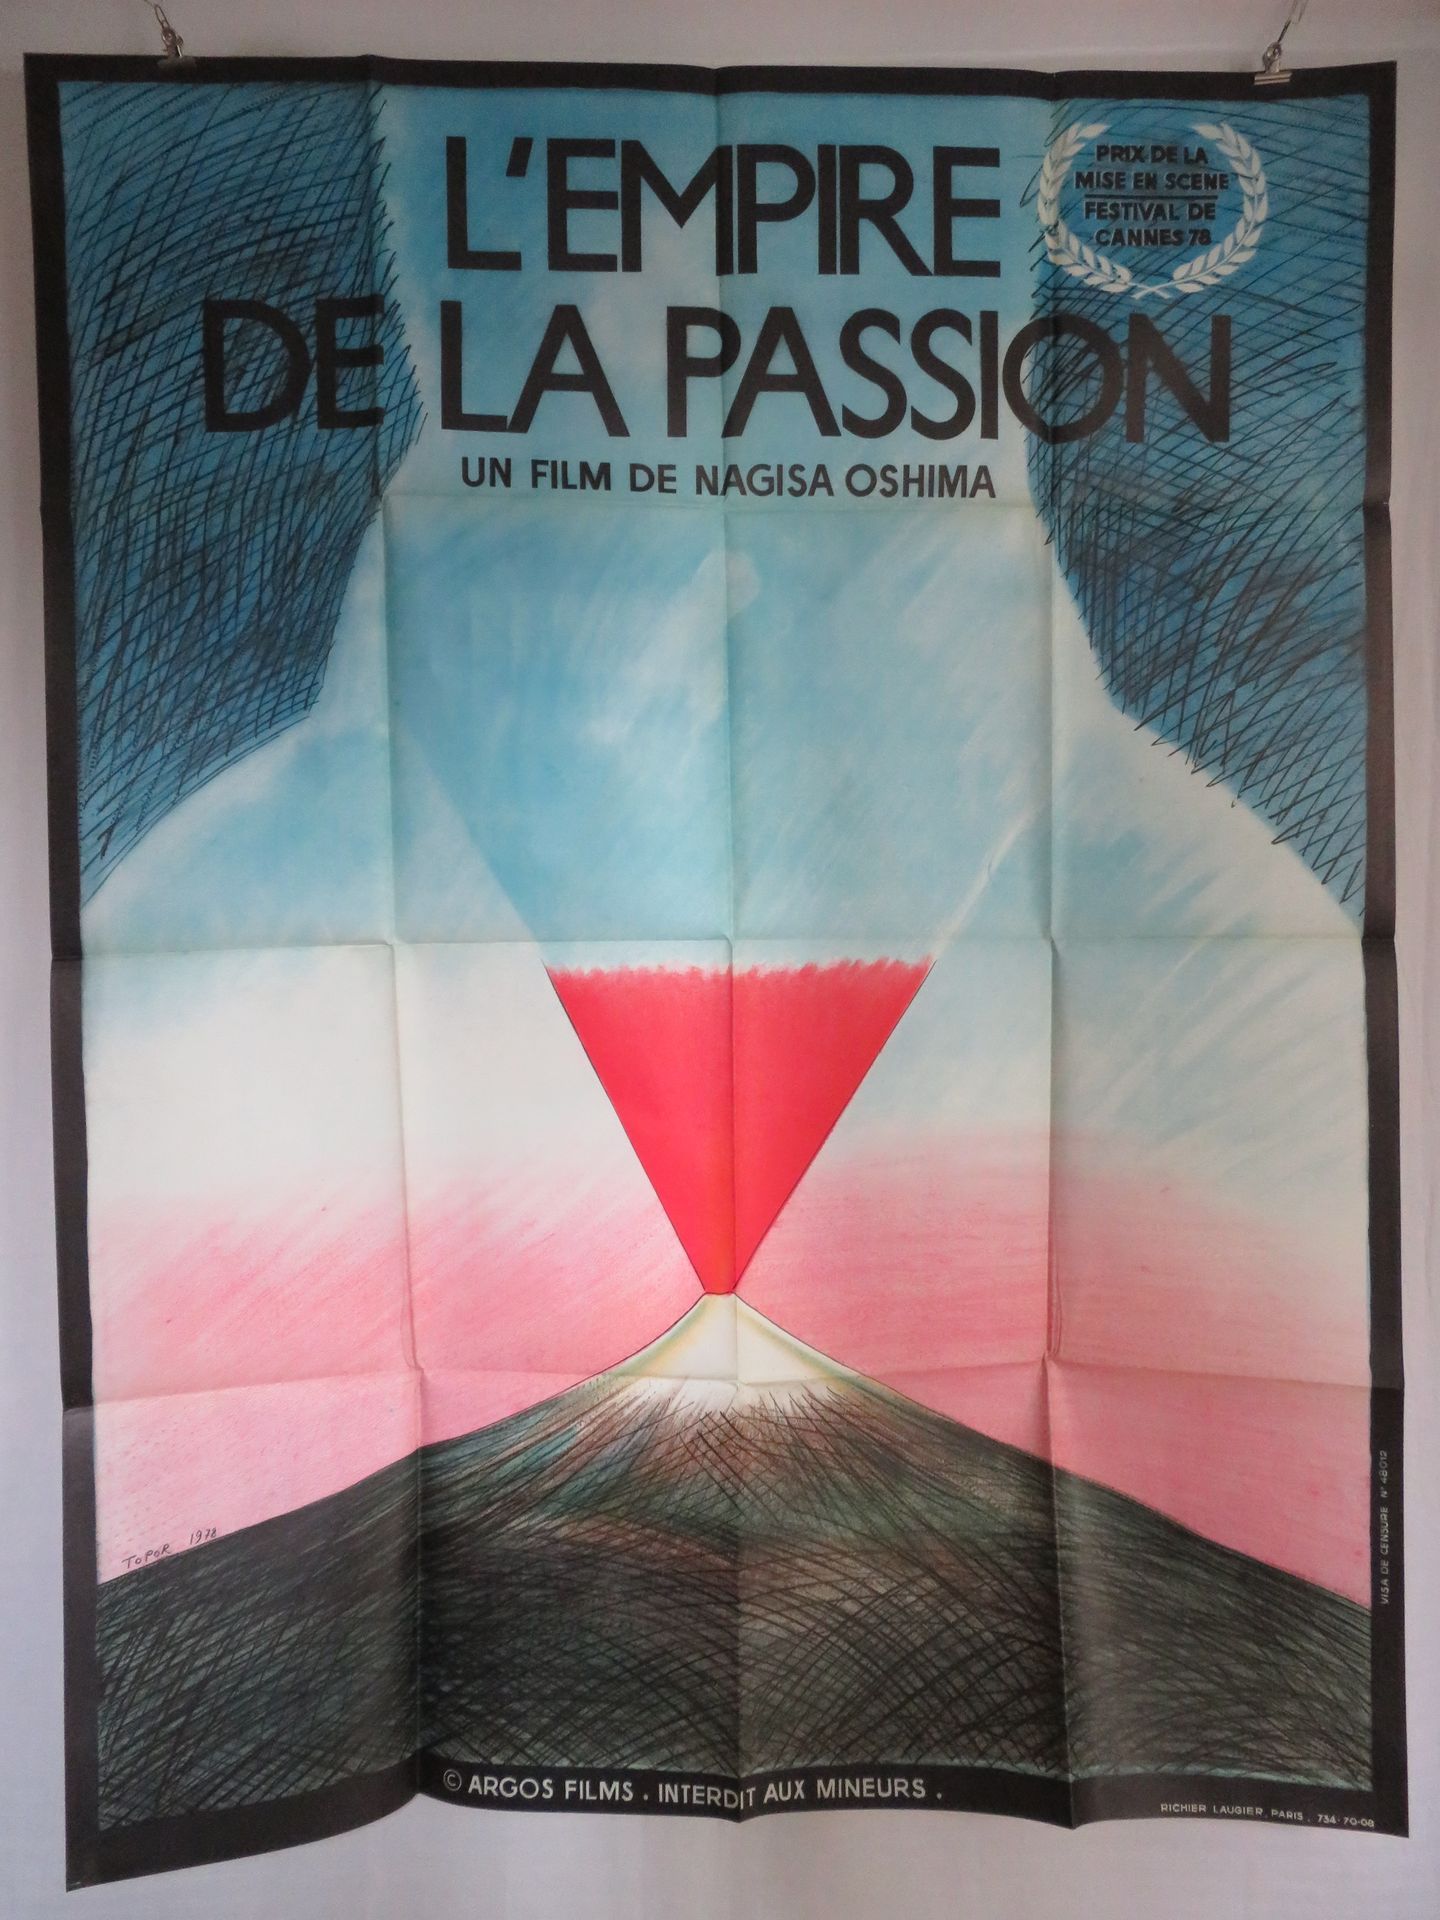 Null "罗兰-托普尔--3张120x160cm的海报：《鼓》（1979年），作者沃尔克-施罗德夫--《激情的帝国》（1978年），作者大岛渚（石版画）--《&hellip;